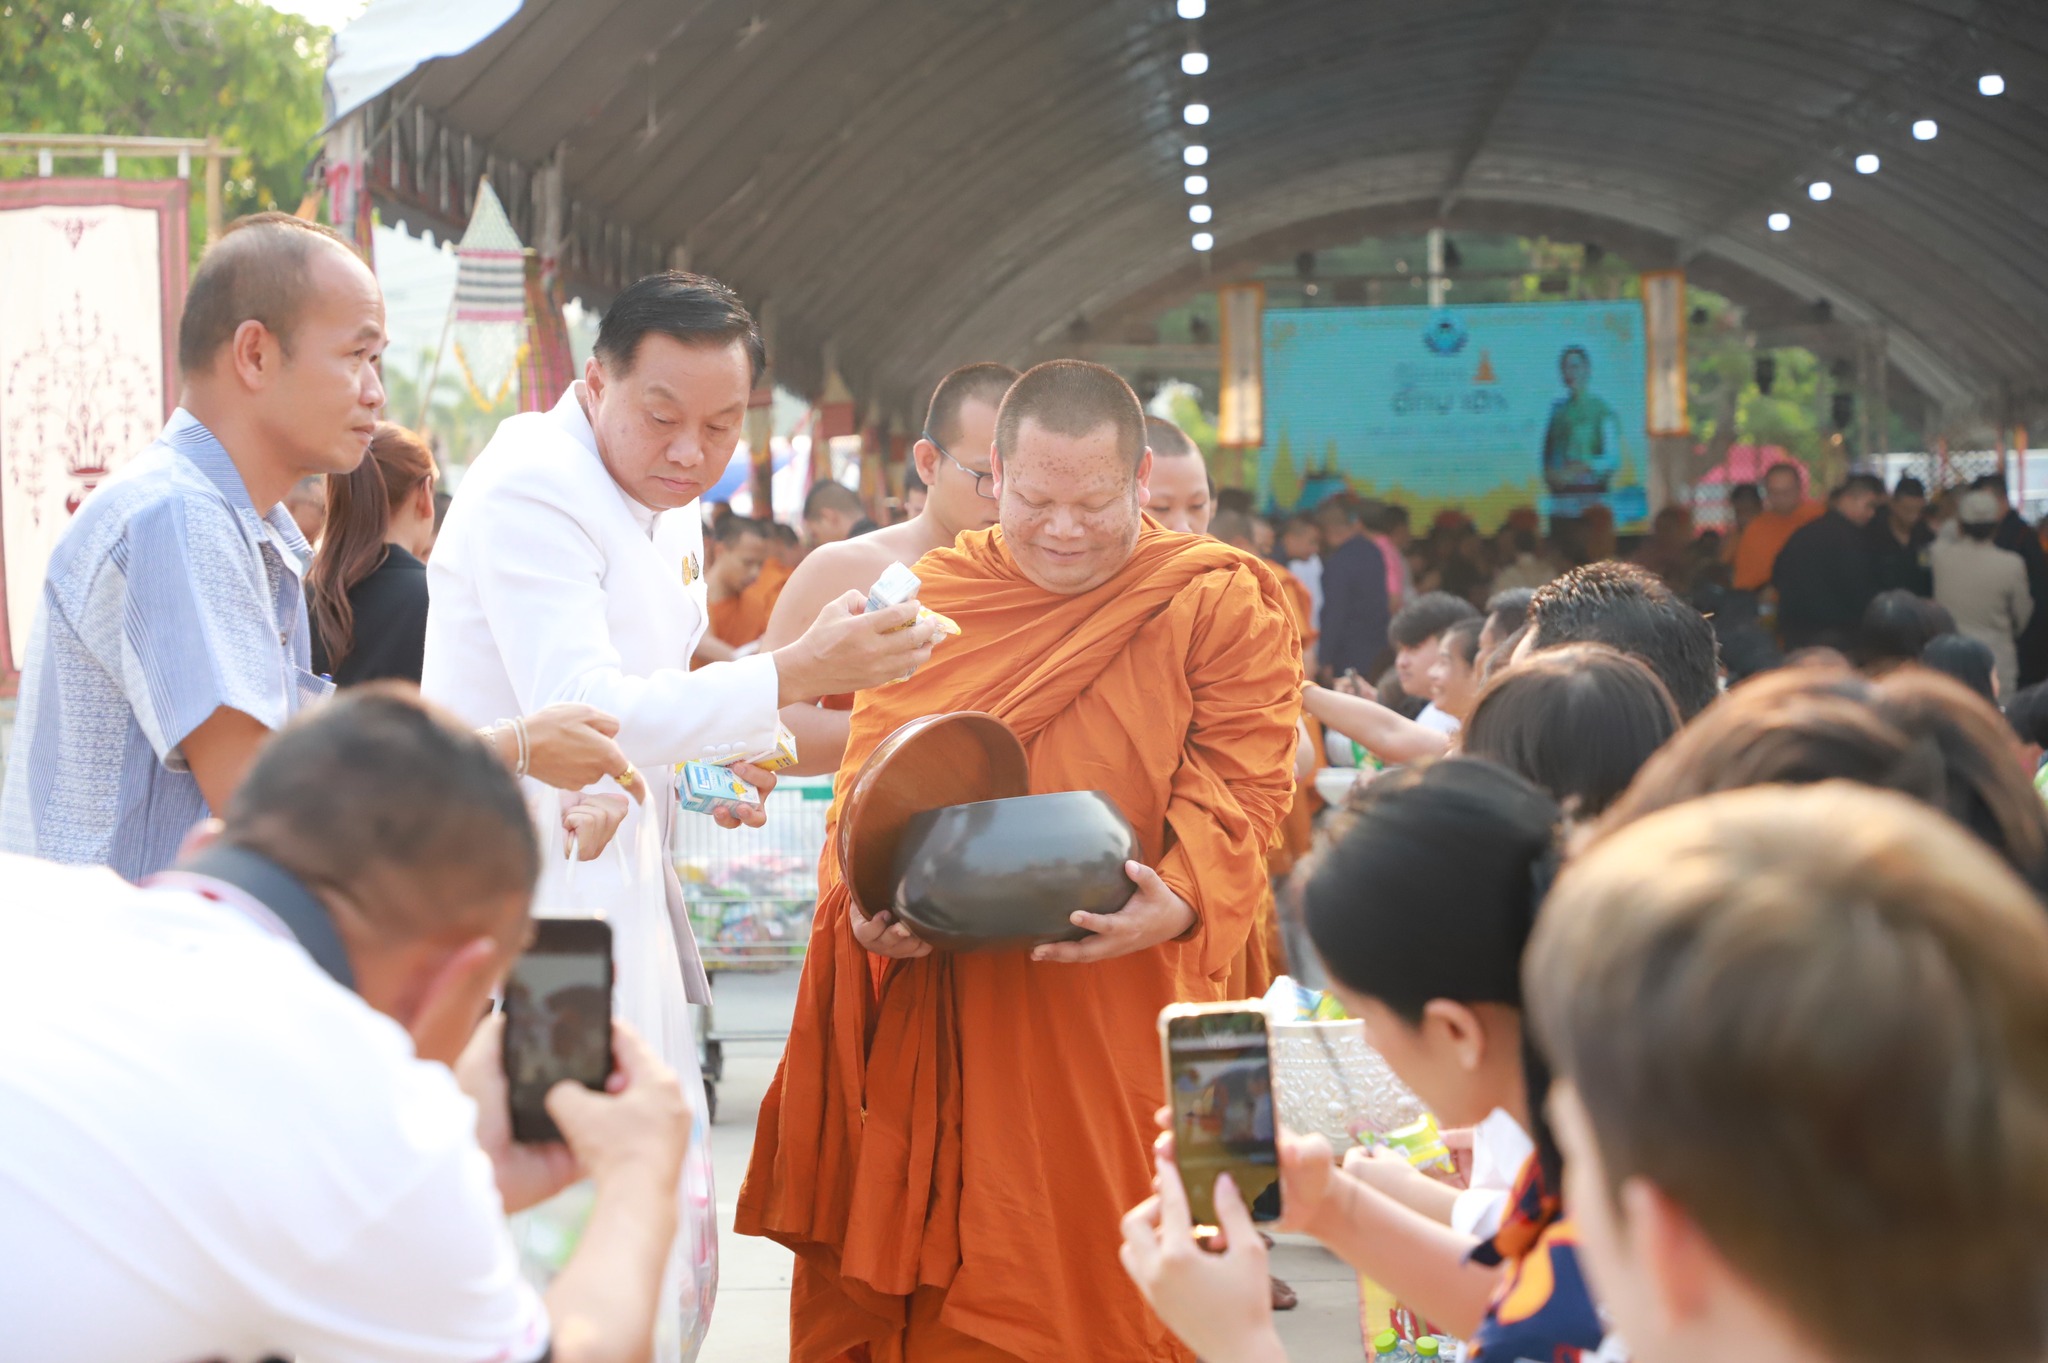 อุบลราชธานี-พ่อเมืองอุบลฯ นำประชาชนร่วมทำบุญตักบาตร เพื่อความเป็นสิริมงคล เนื่องใน “วันขึ้นปีใหม่ไทย “